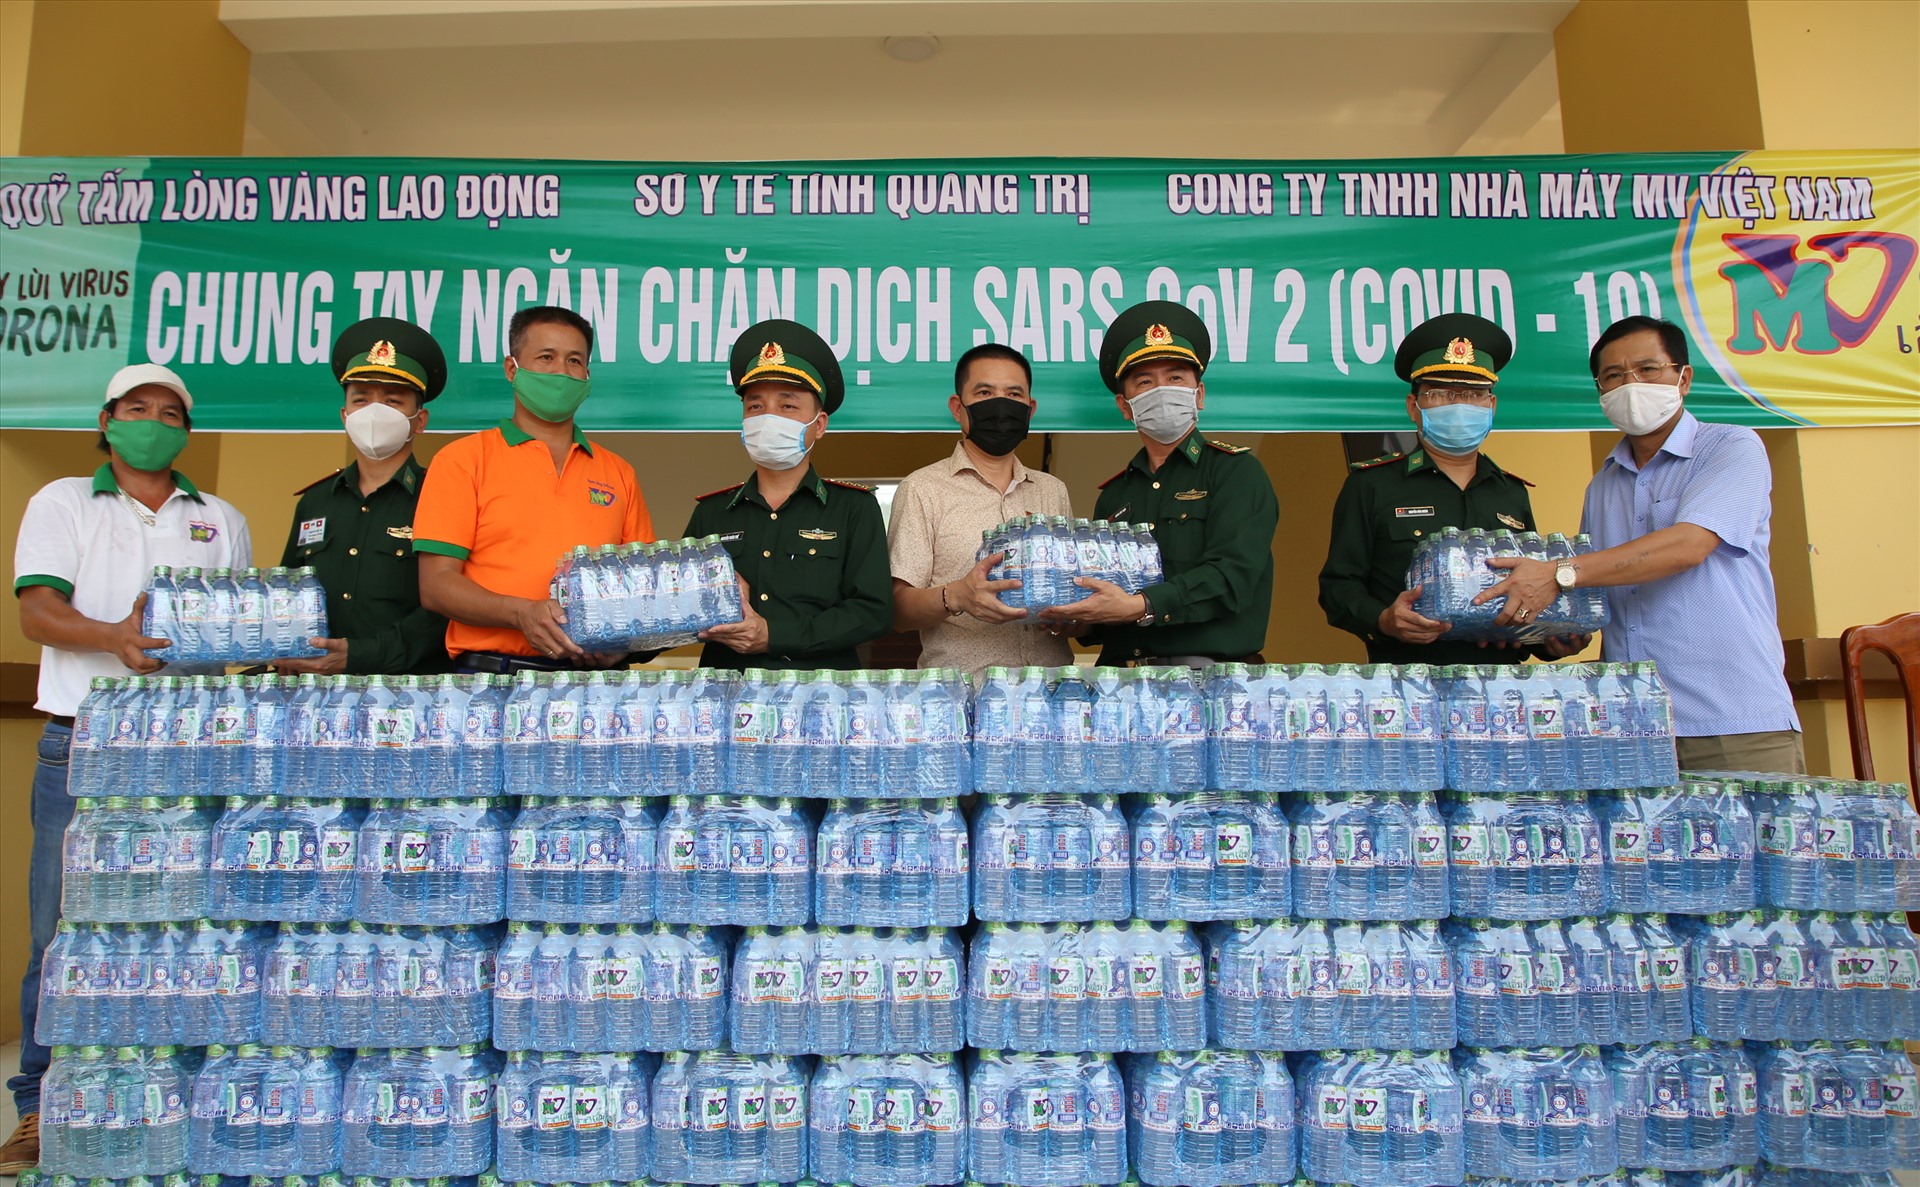 Ban tổ chức chương trình trao nước lọc cho cán bộ, chiến sĩ Đồn Biên phòng Cửa khẩu Quốc tế Lao Bảo. Ảnh: Hưng Thơ.